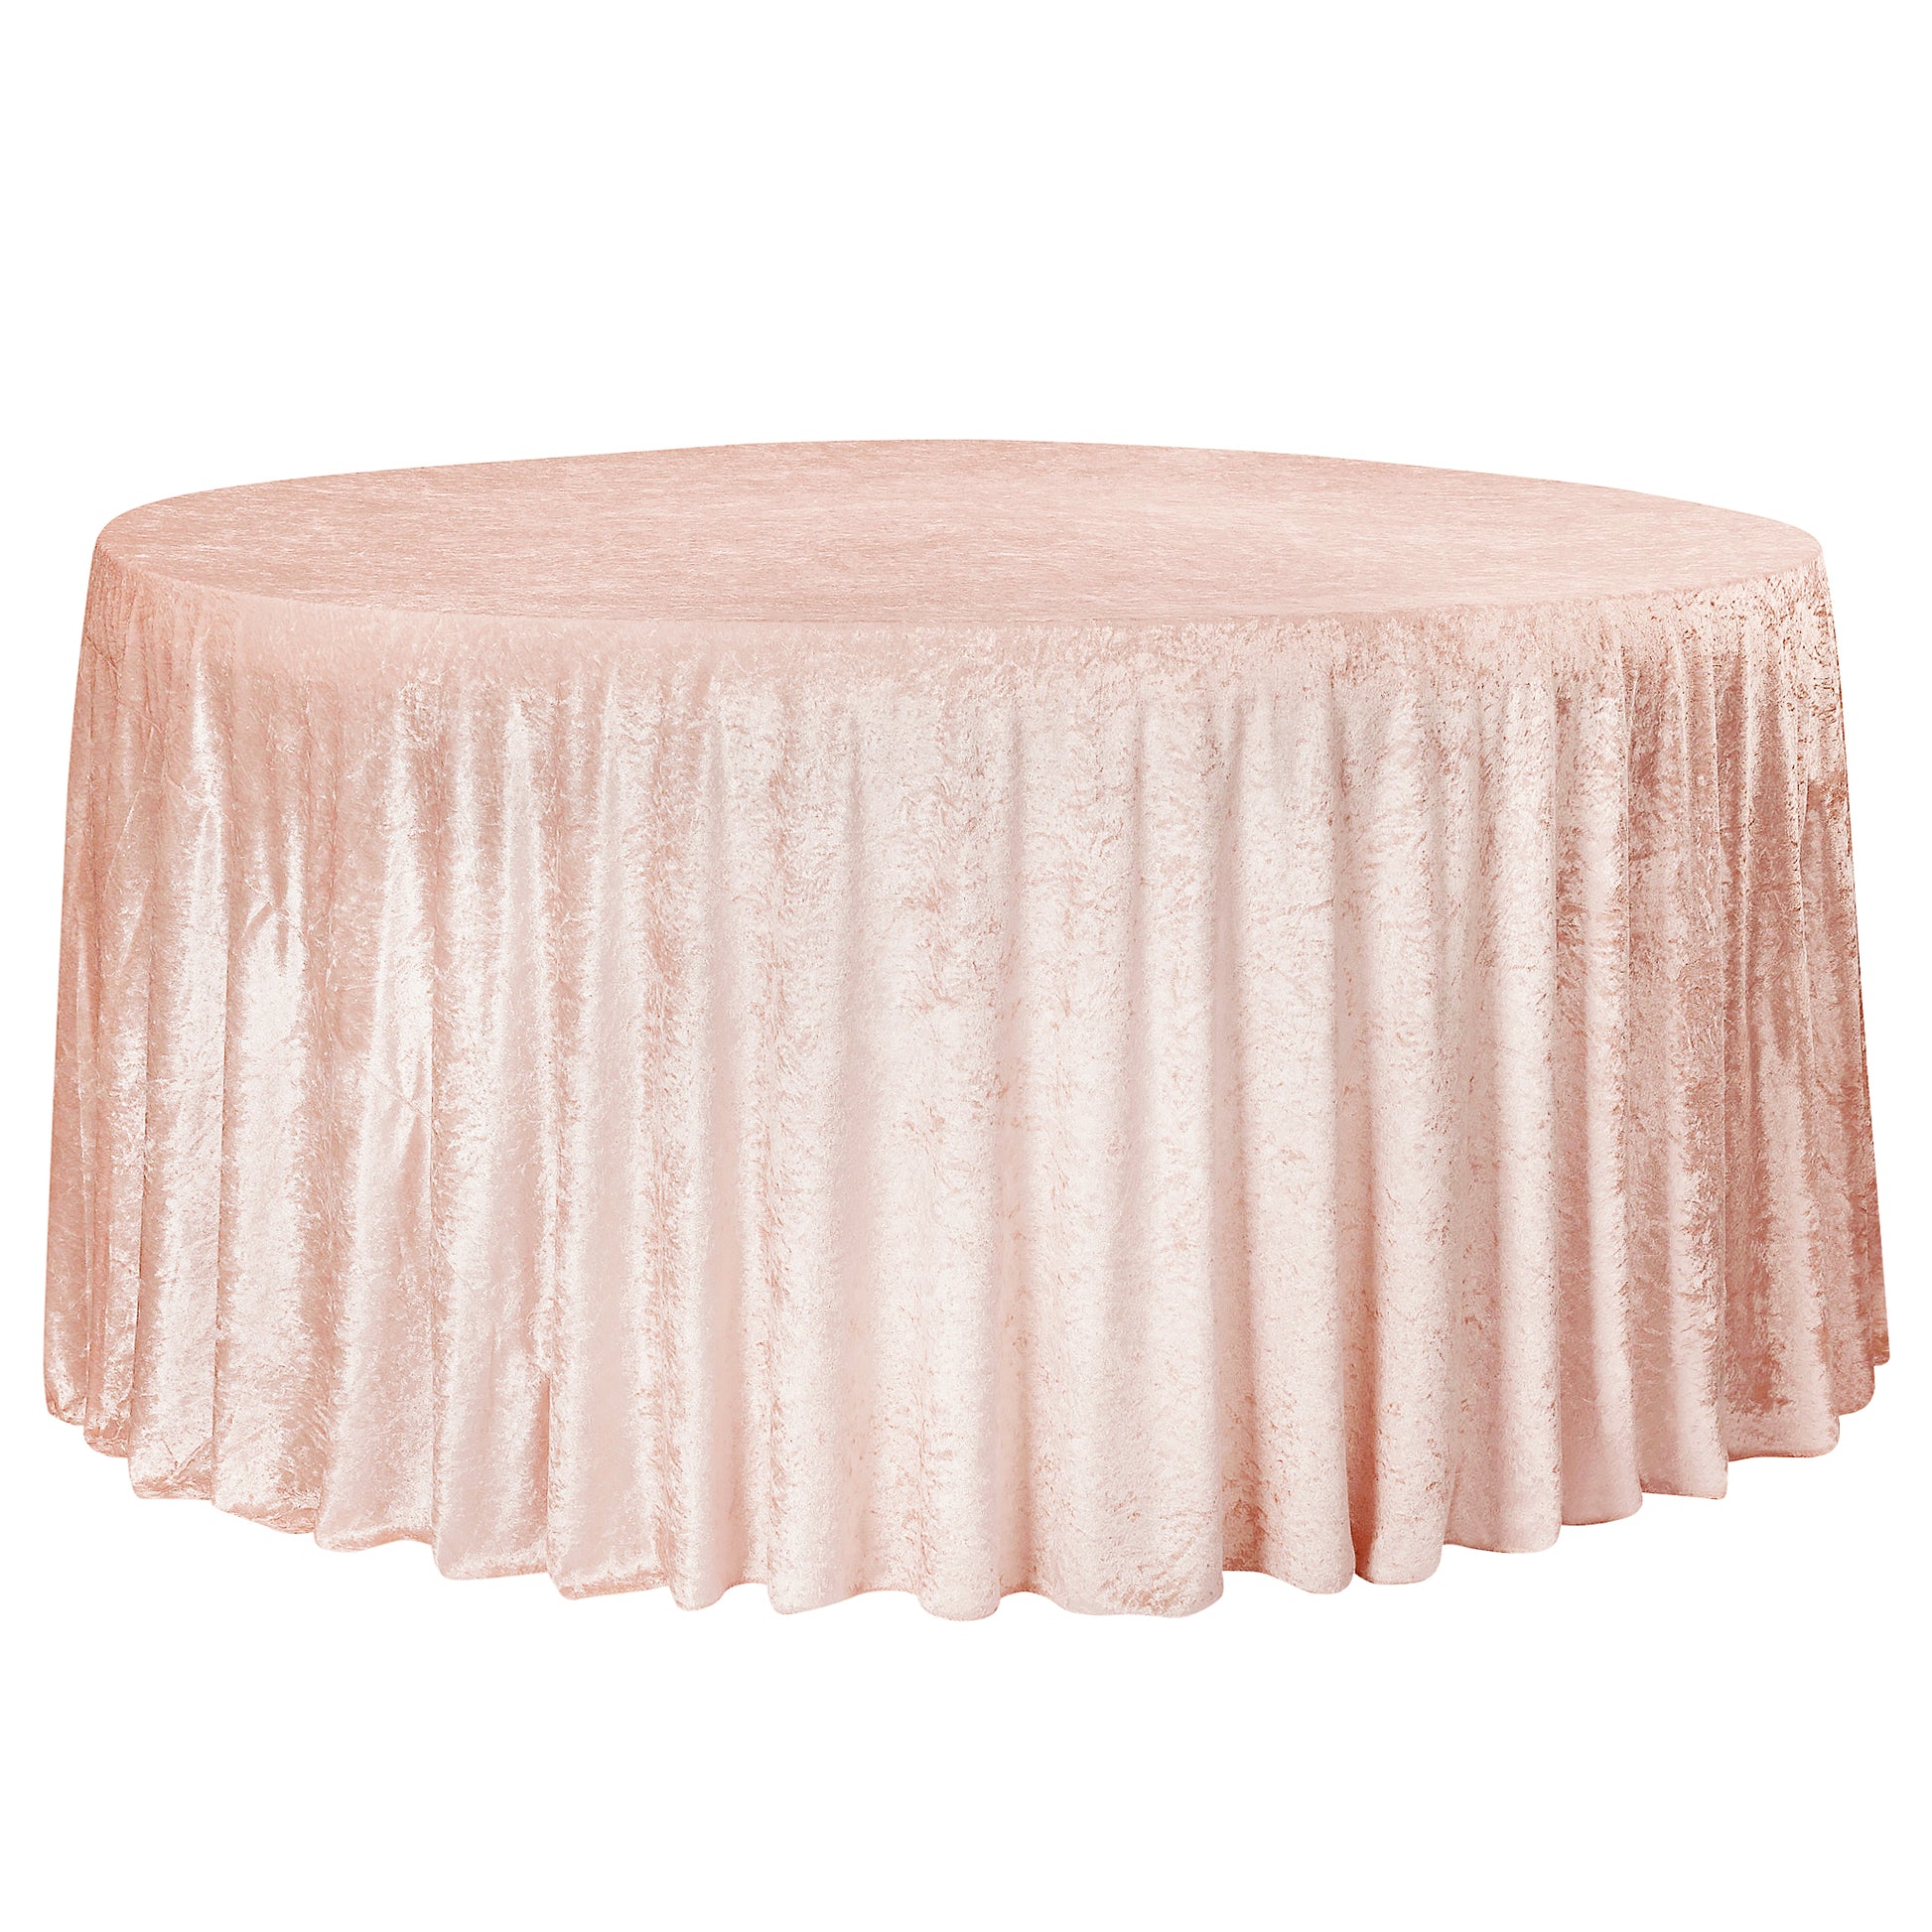 Velvet 132" Round Tablecloth - Blush/Rose Gold - CV Linens